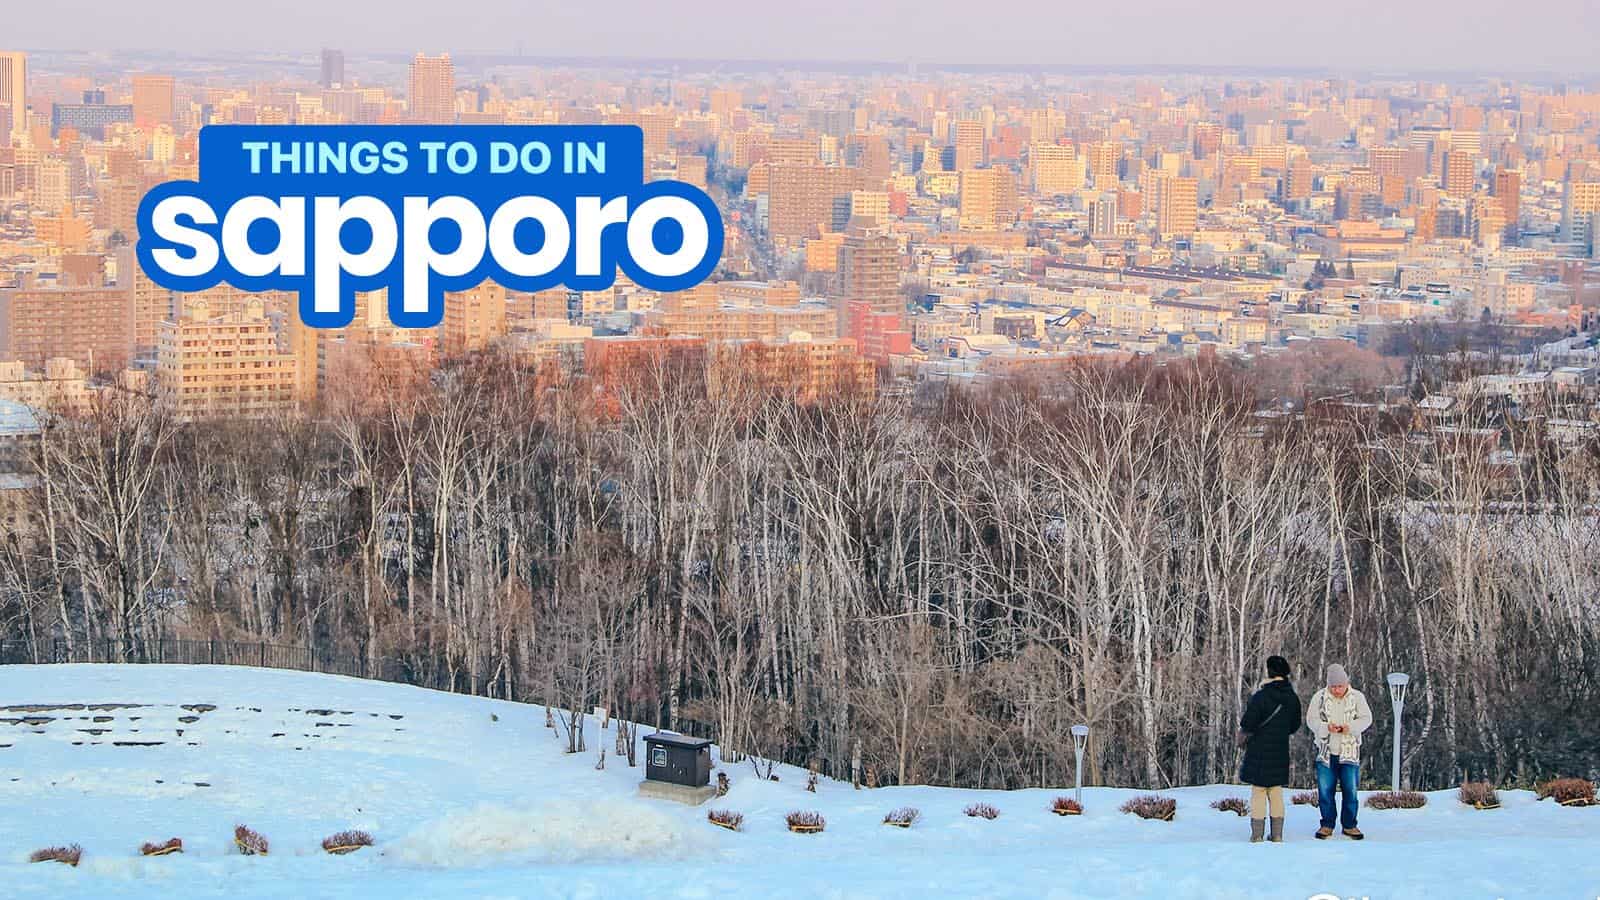 札幌:20件最值得做的事和游览的地方